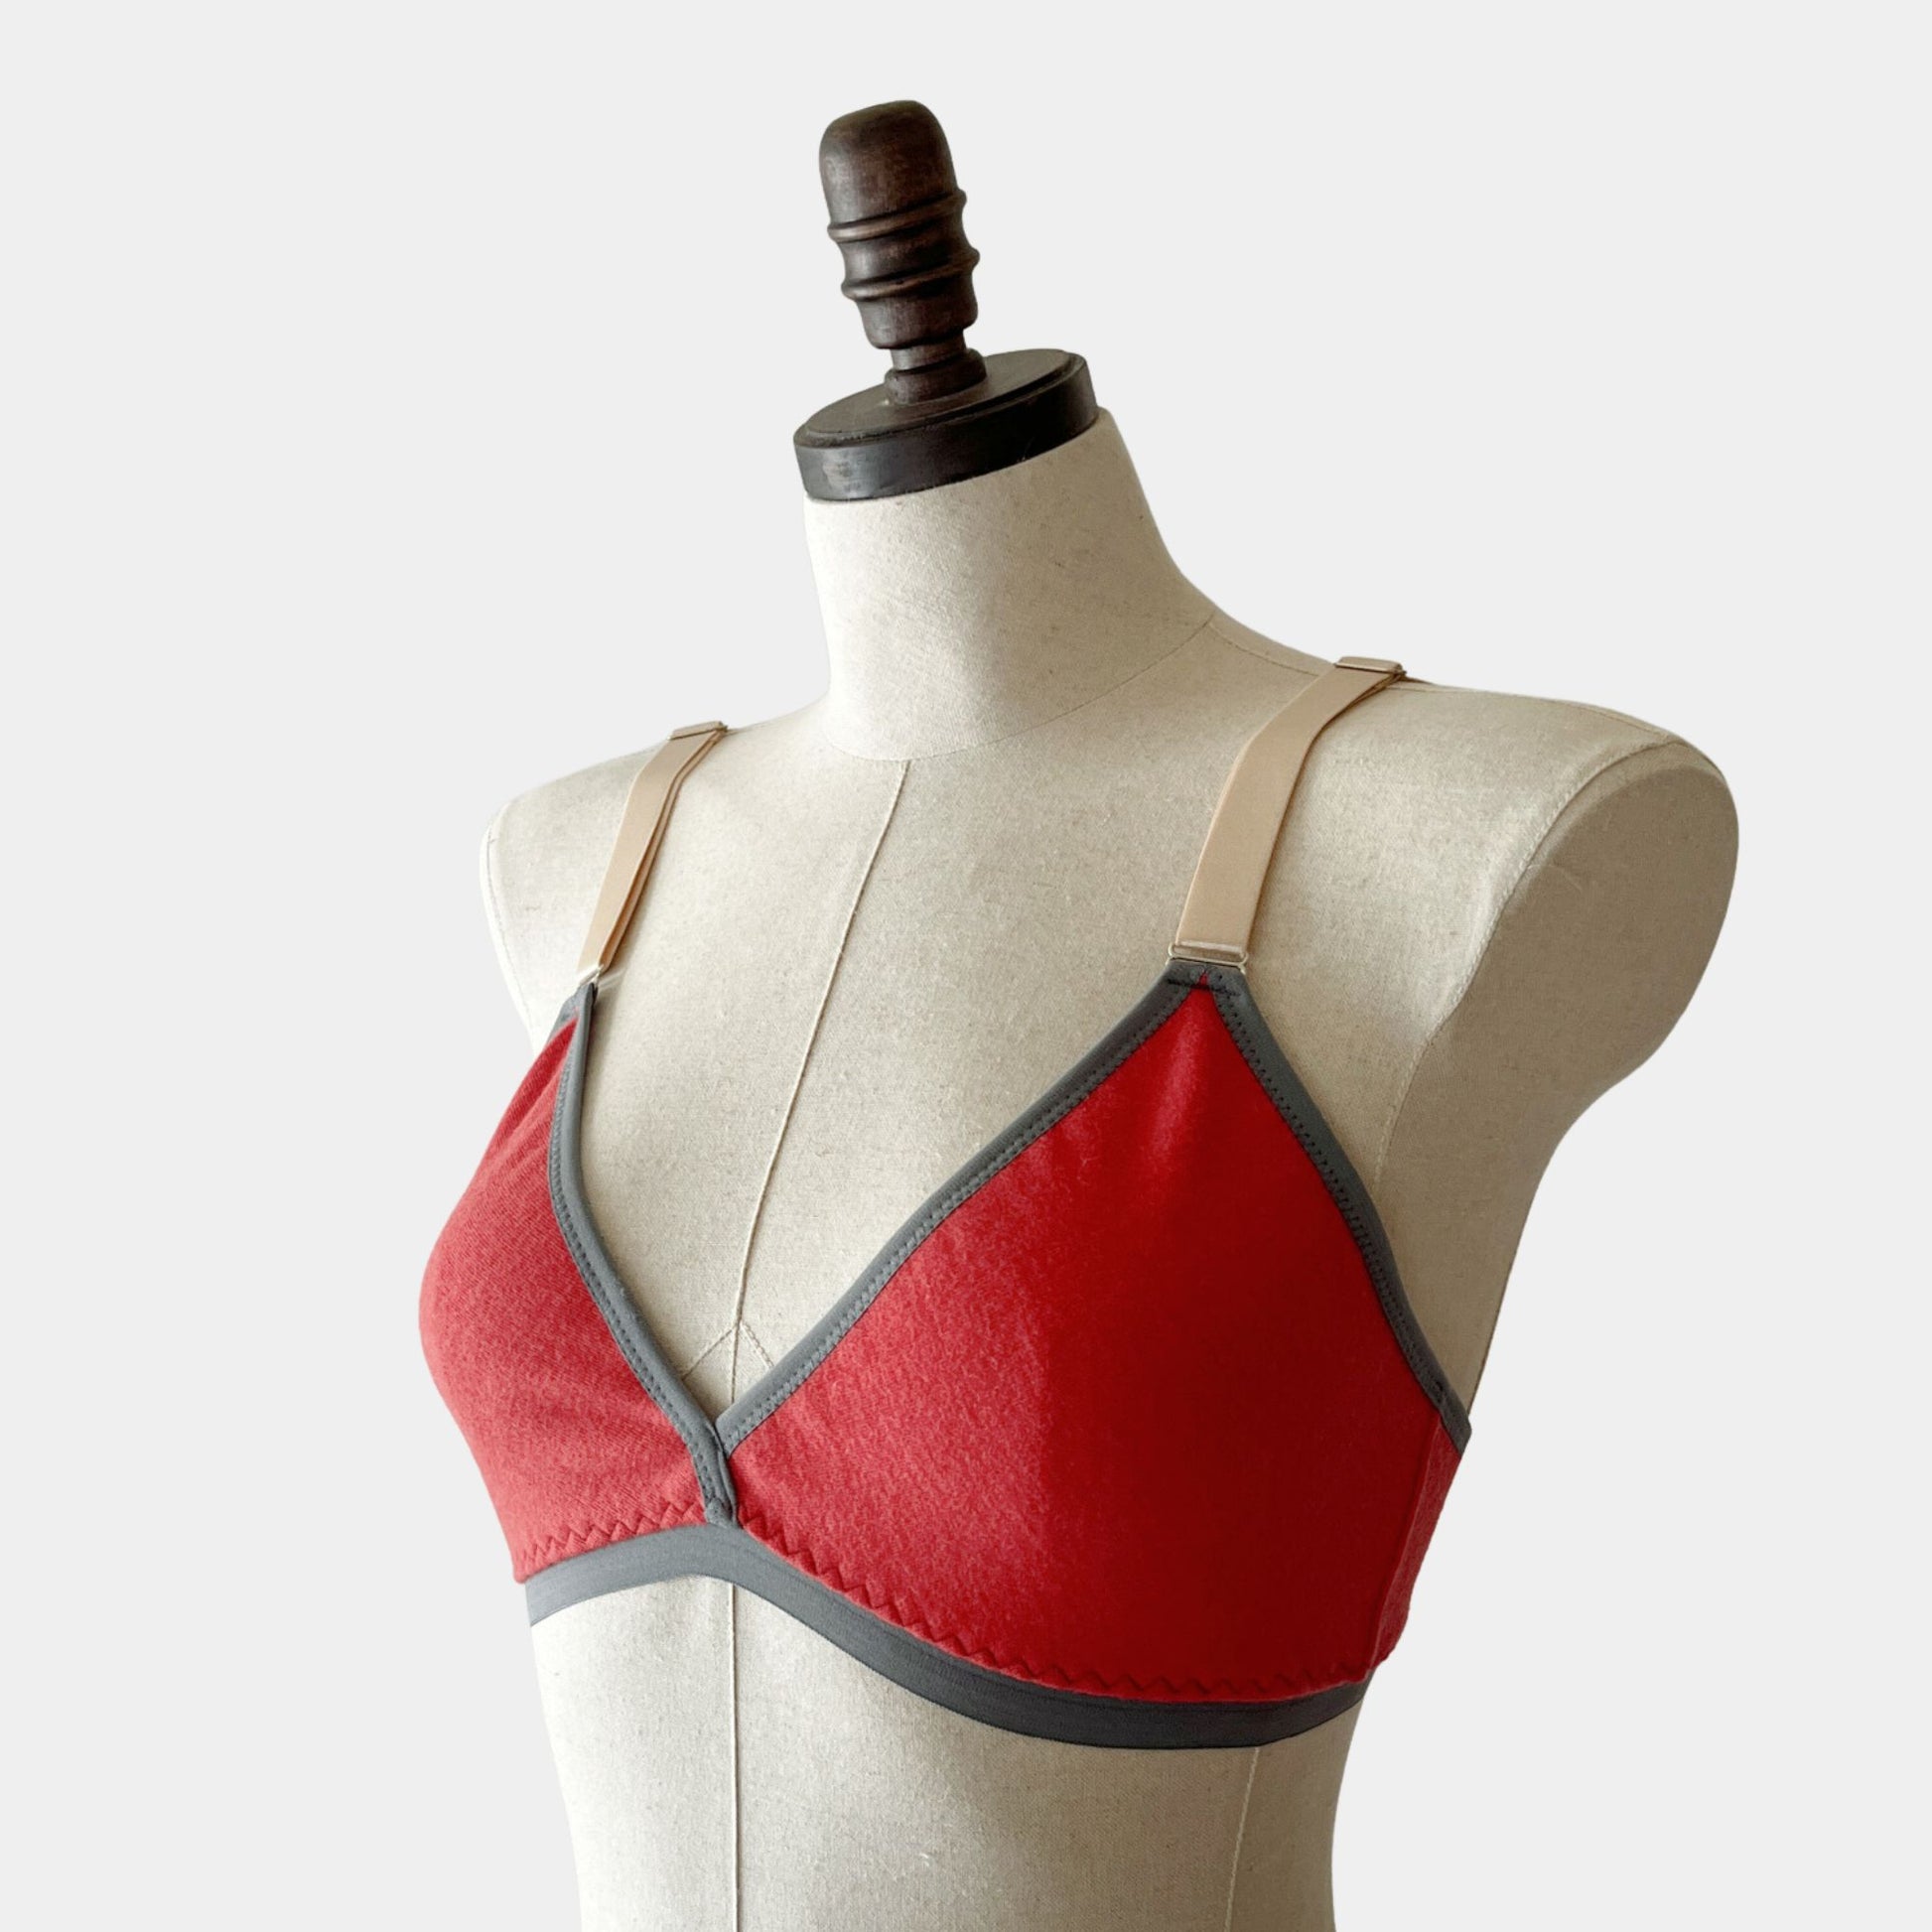 Merino wool bras women's  Shop Wool bra tops underwear from Canada –  econica